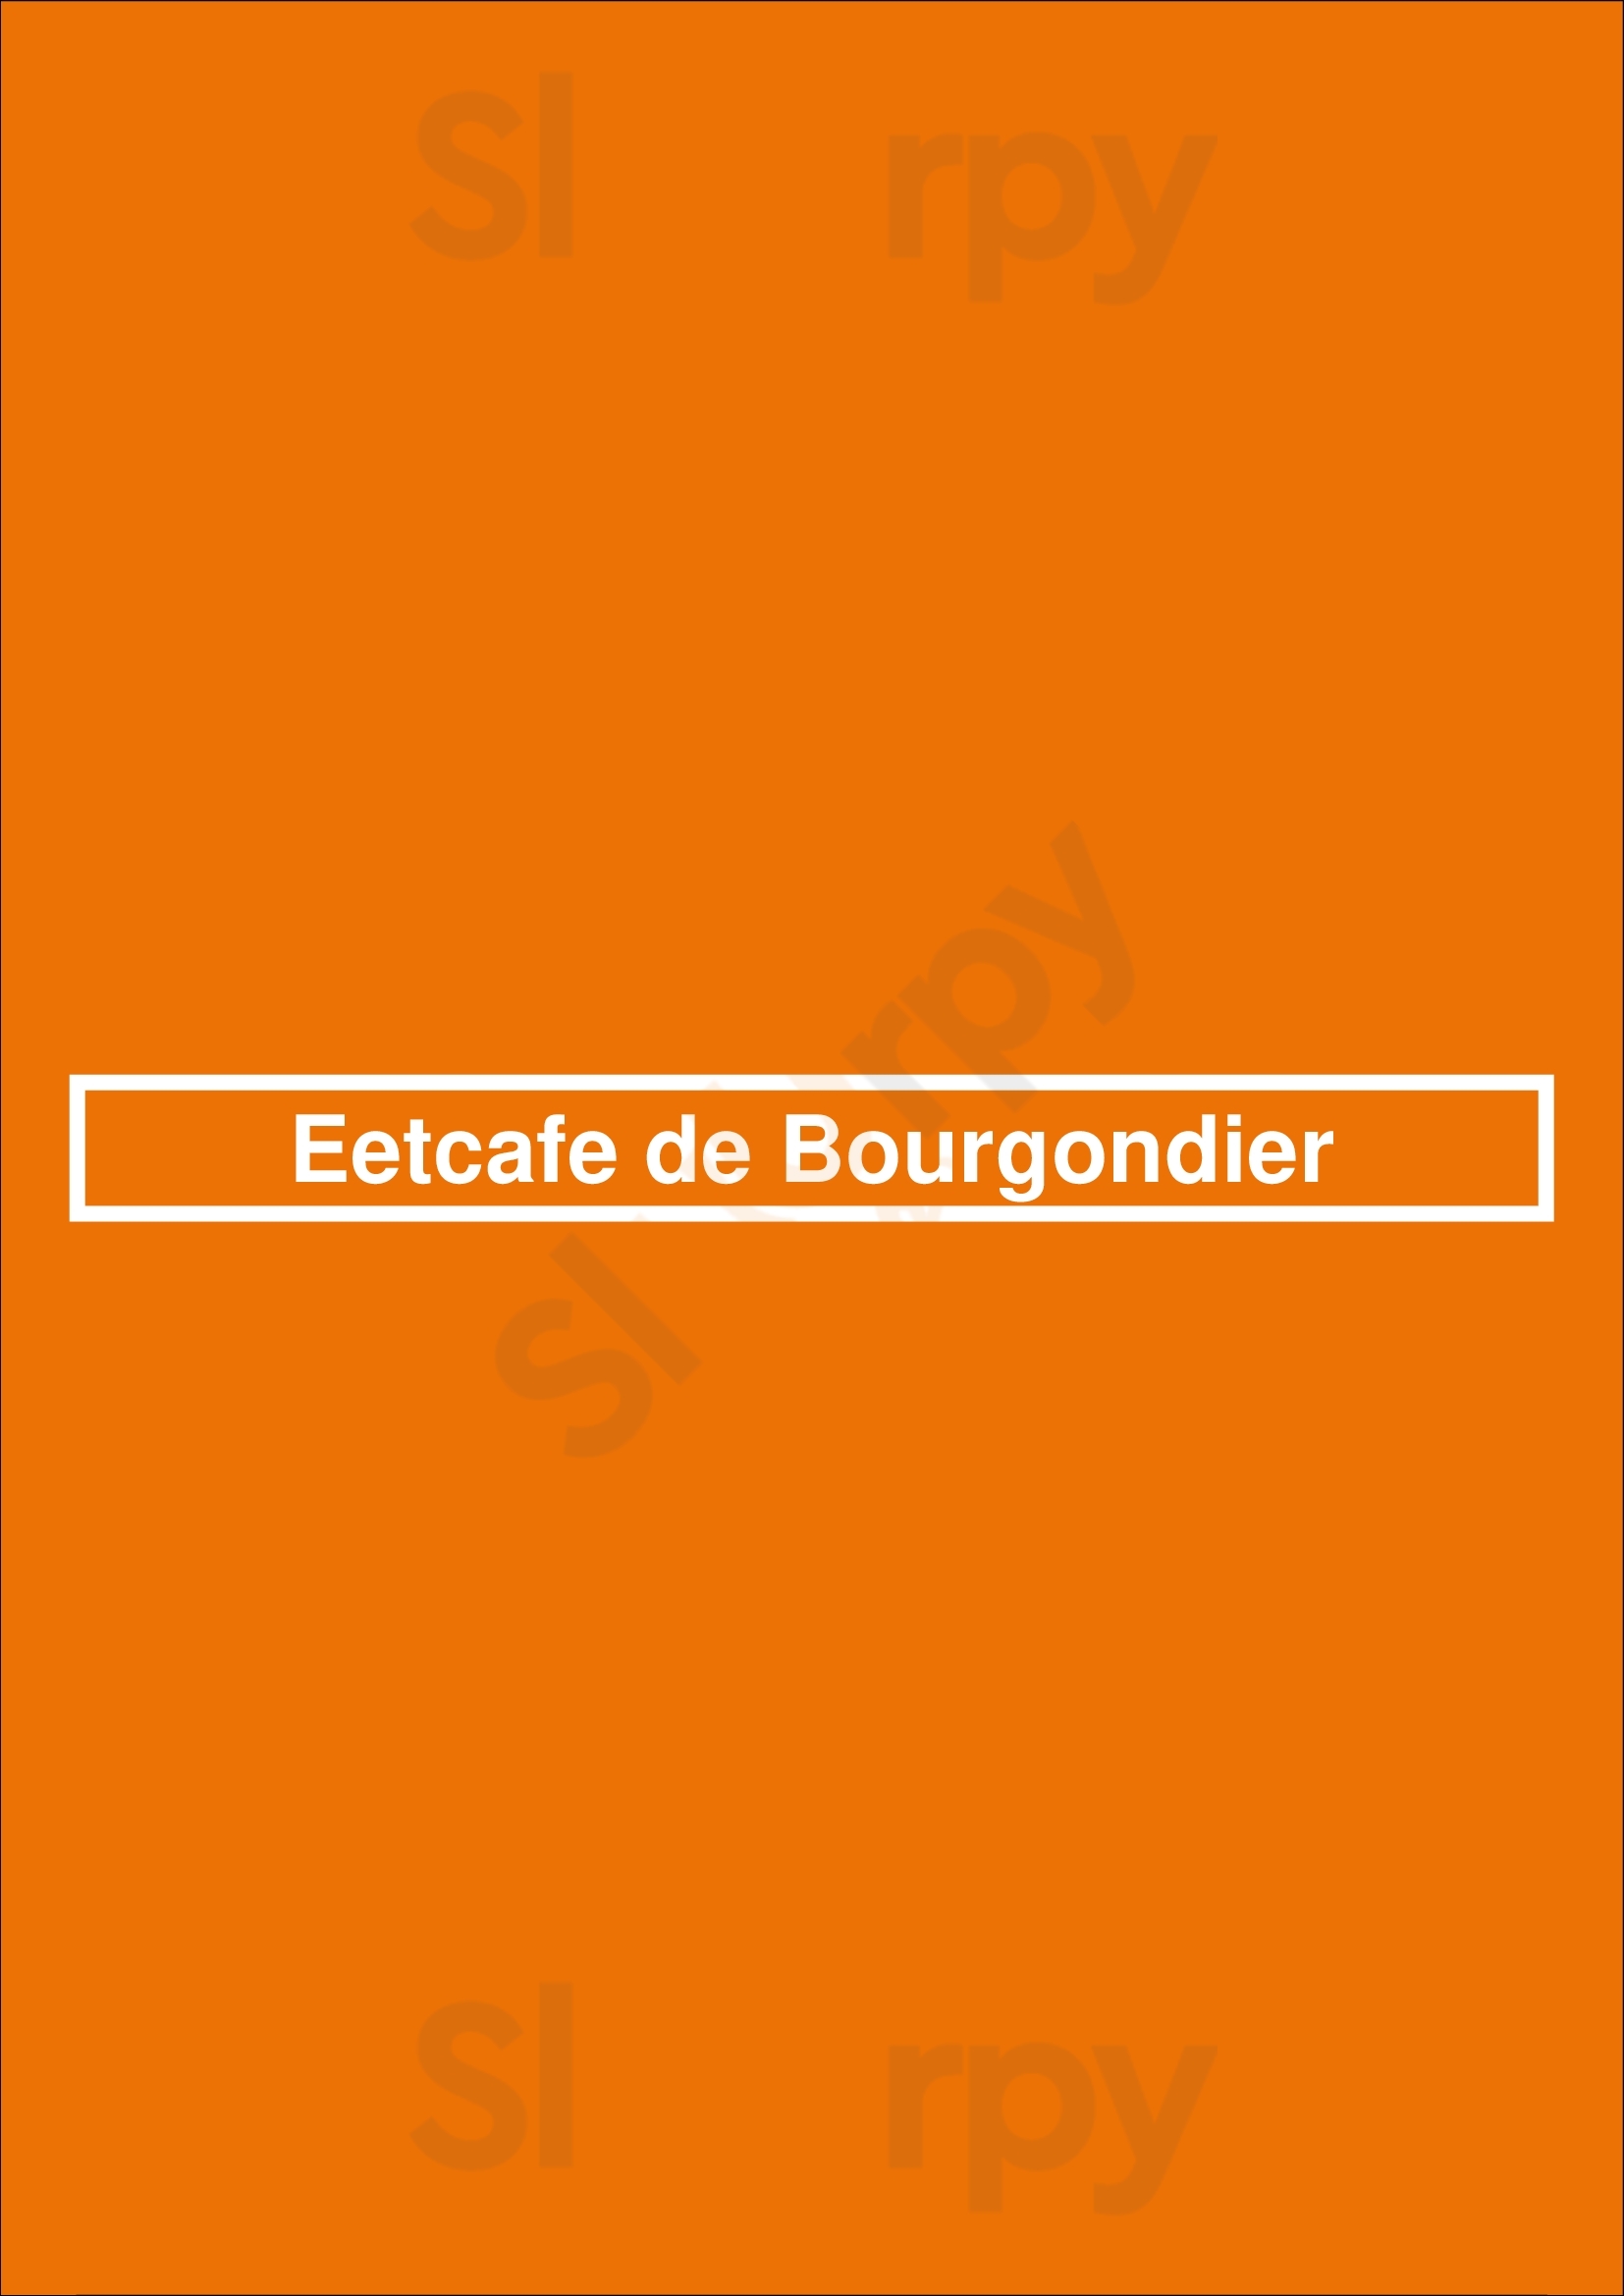 Eetcafe De Bourgondier Garderen Menu - 1